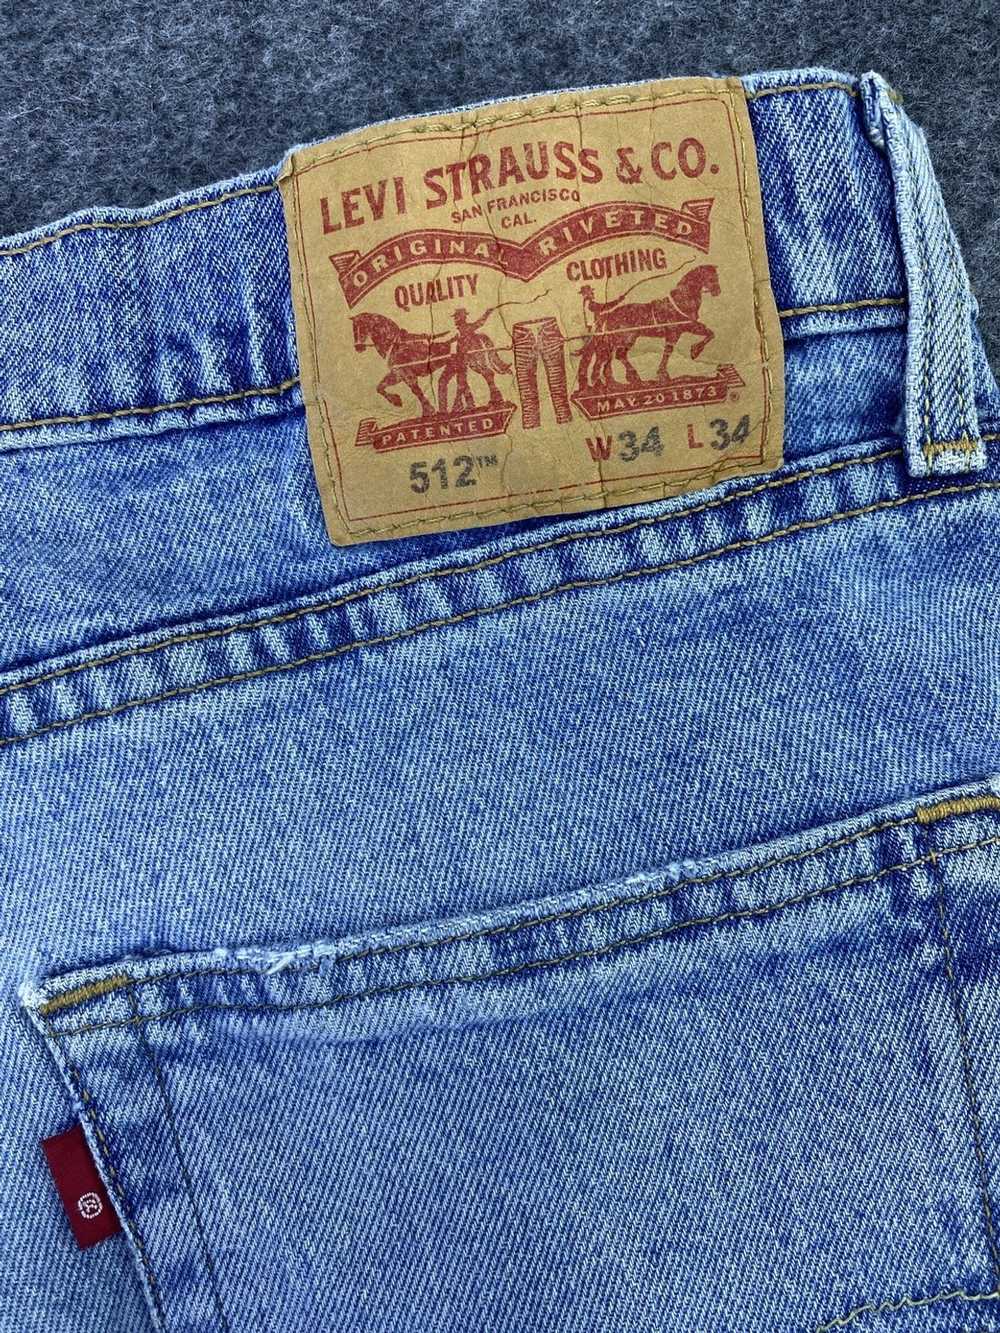 Jean × Levi's × Vintage VINTAGE LEVIS 512 DISTRES… - image 8